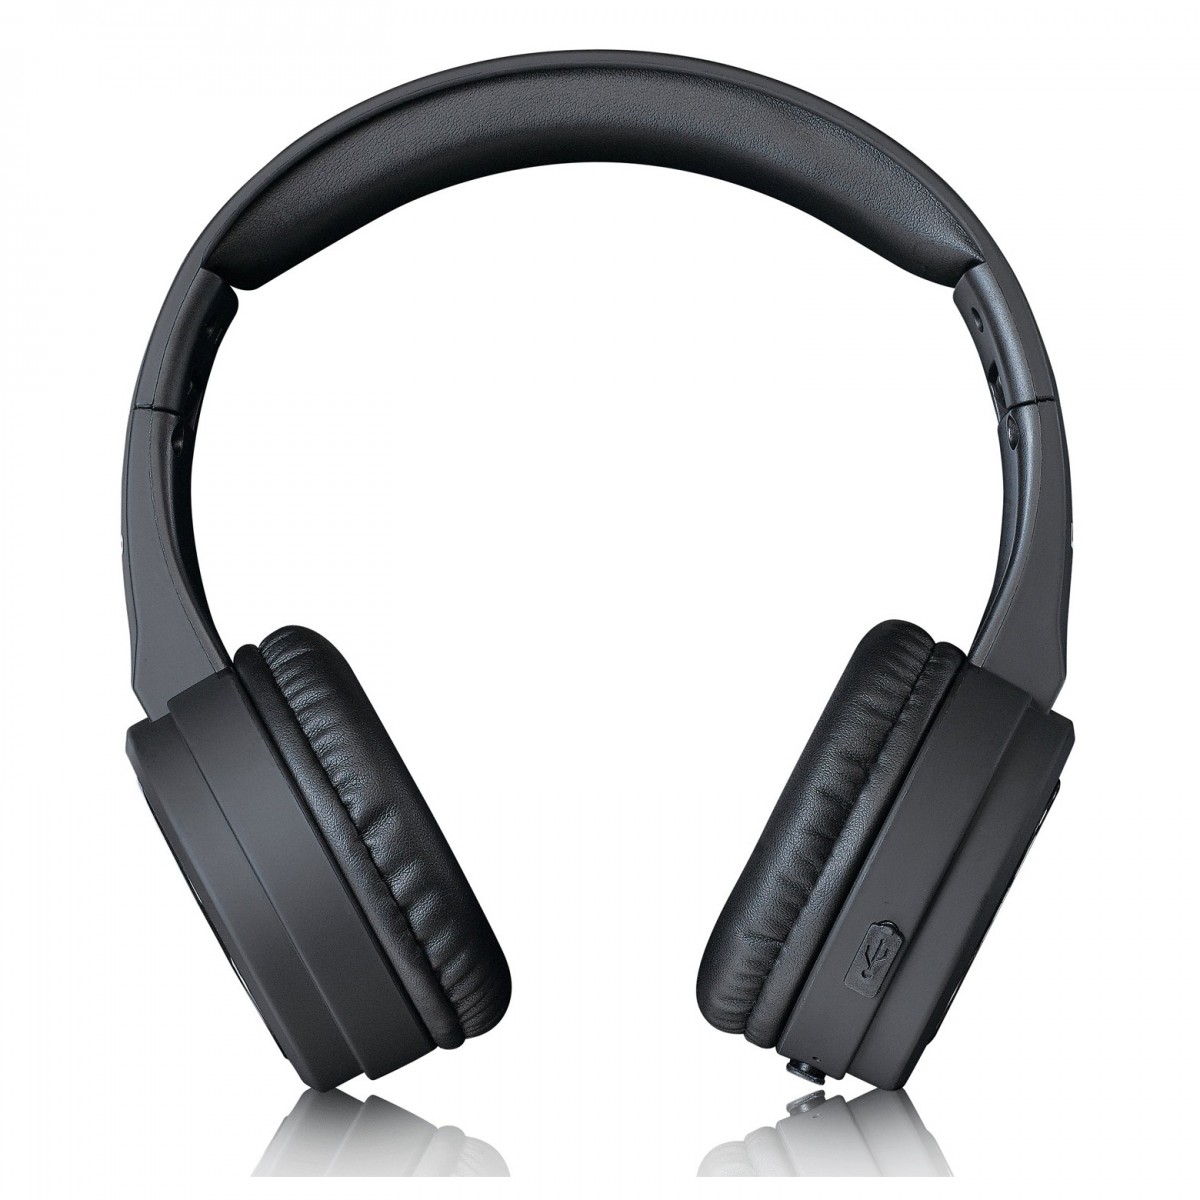 Bezdrátová sluchátka Lenco HPB-330BK / Bluetooth / voděodolné/ handsfree /černá / ROZBALENO